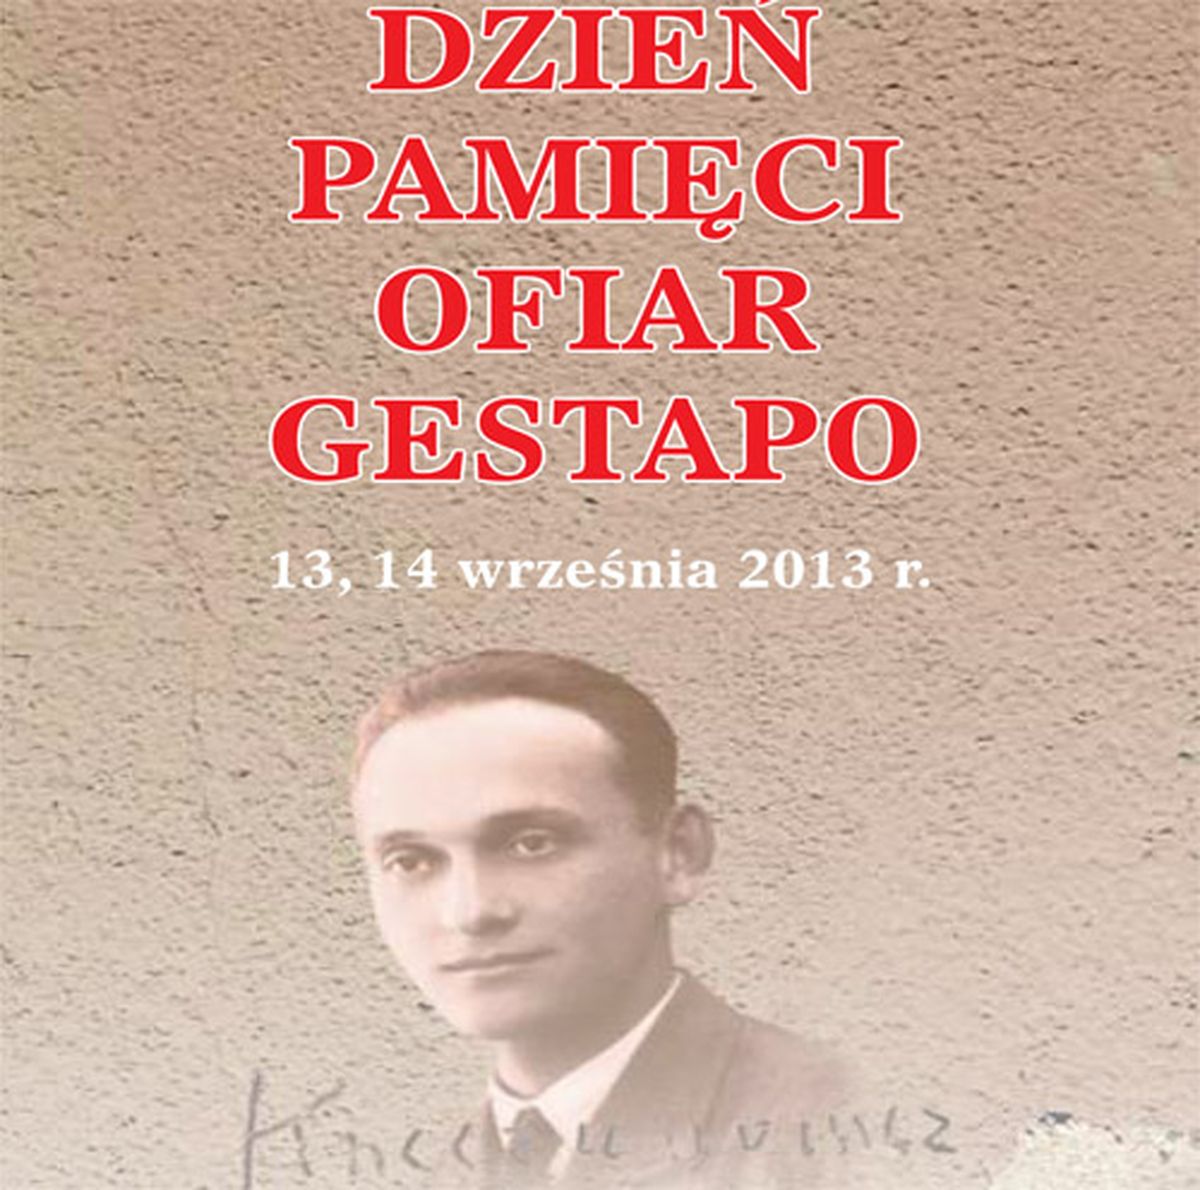 Dzień Pamięci Ofiar Gestapo, Muzeum Historyczne Miasta Krakowa (źródło: materiały prasowe)